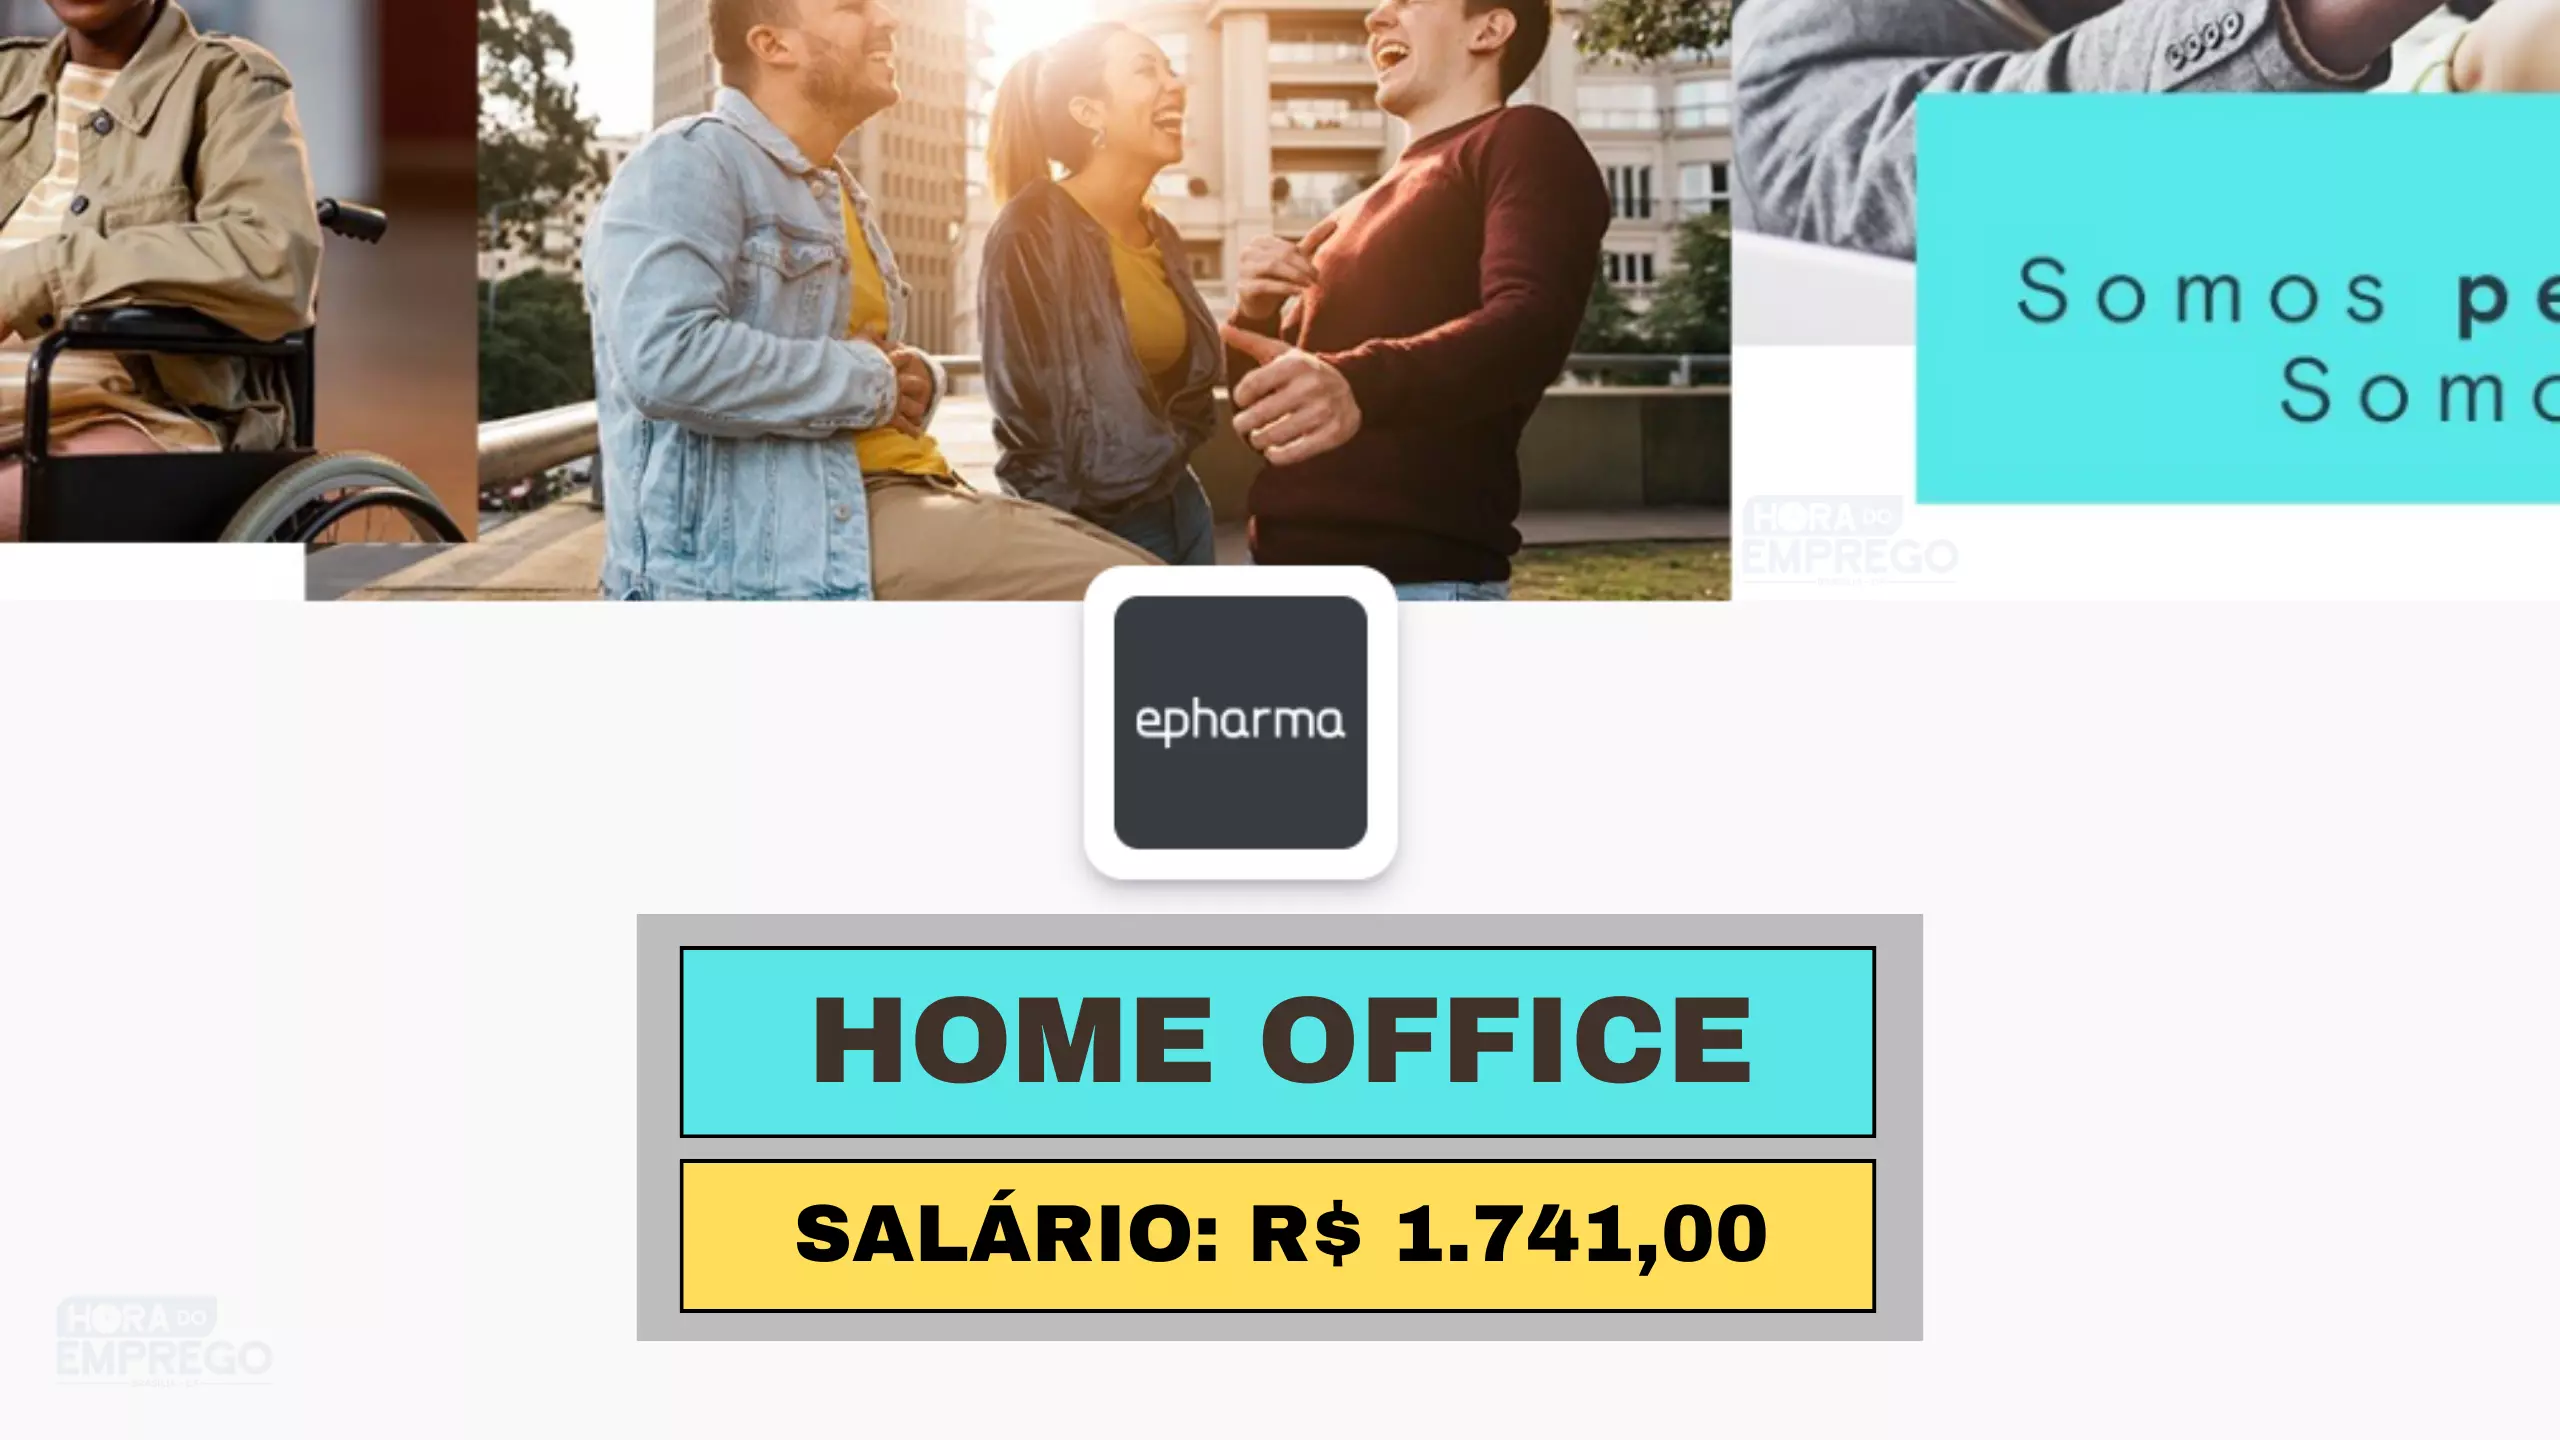 Epharma abre vagas HOME OFFICE para Atendente de Operações com salário de R$ 1.741,00